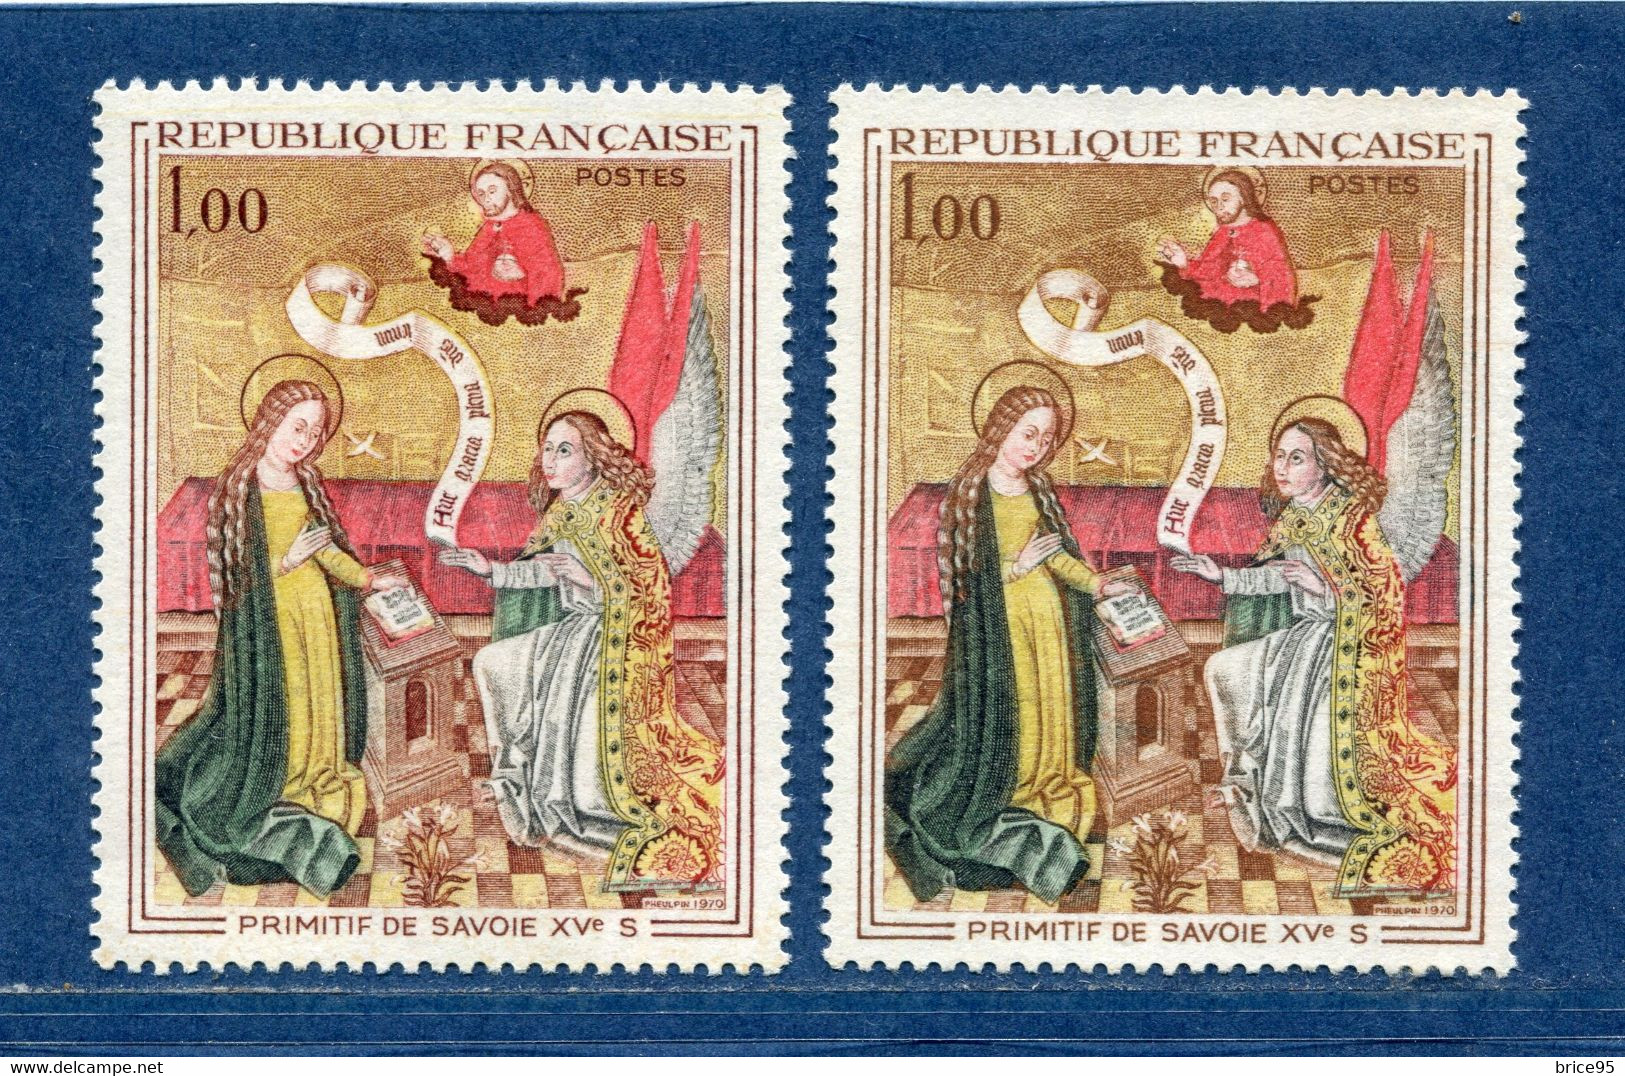 ⭐ France - Variété - YT N° 1640 - Couleurs - Pétouilles - Neuf Sans Charnière - 1970 ⭐ - Unused Stamps